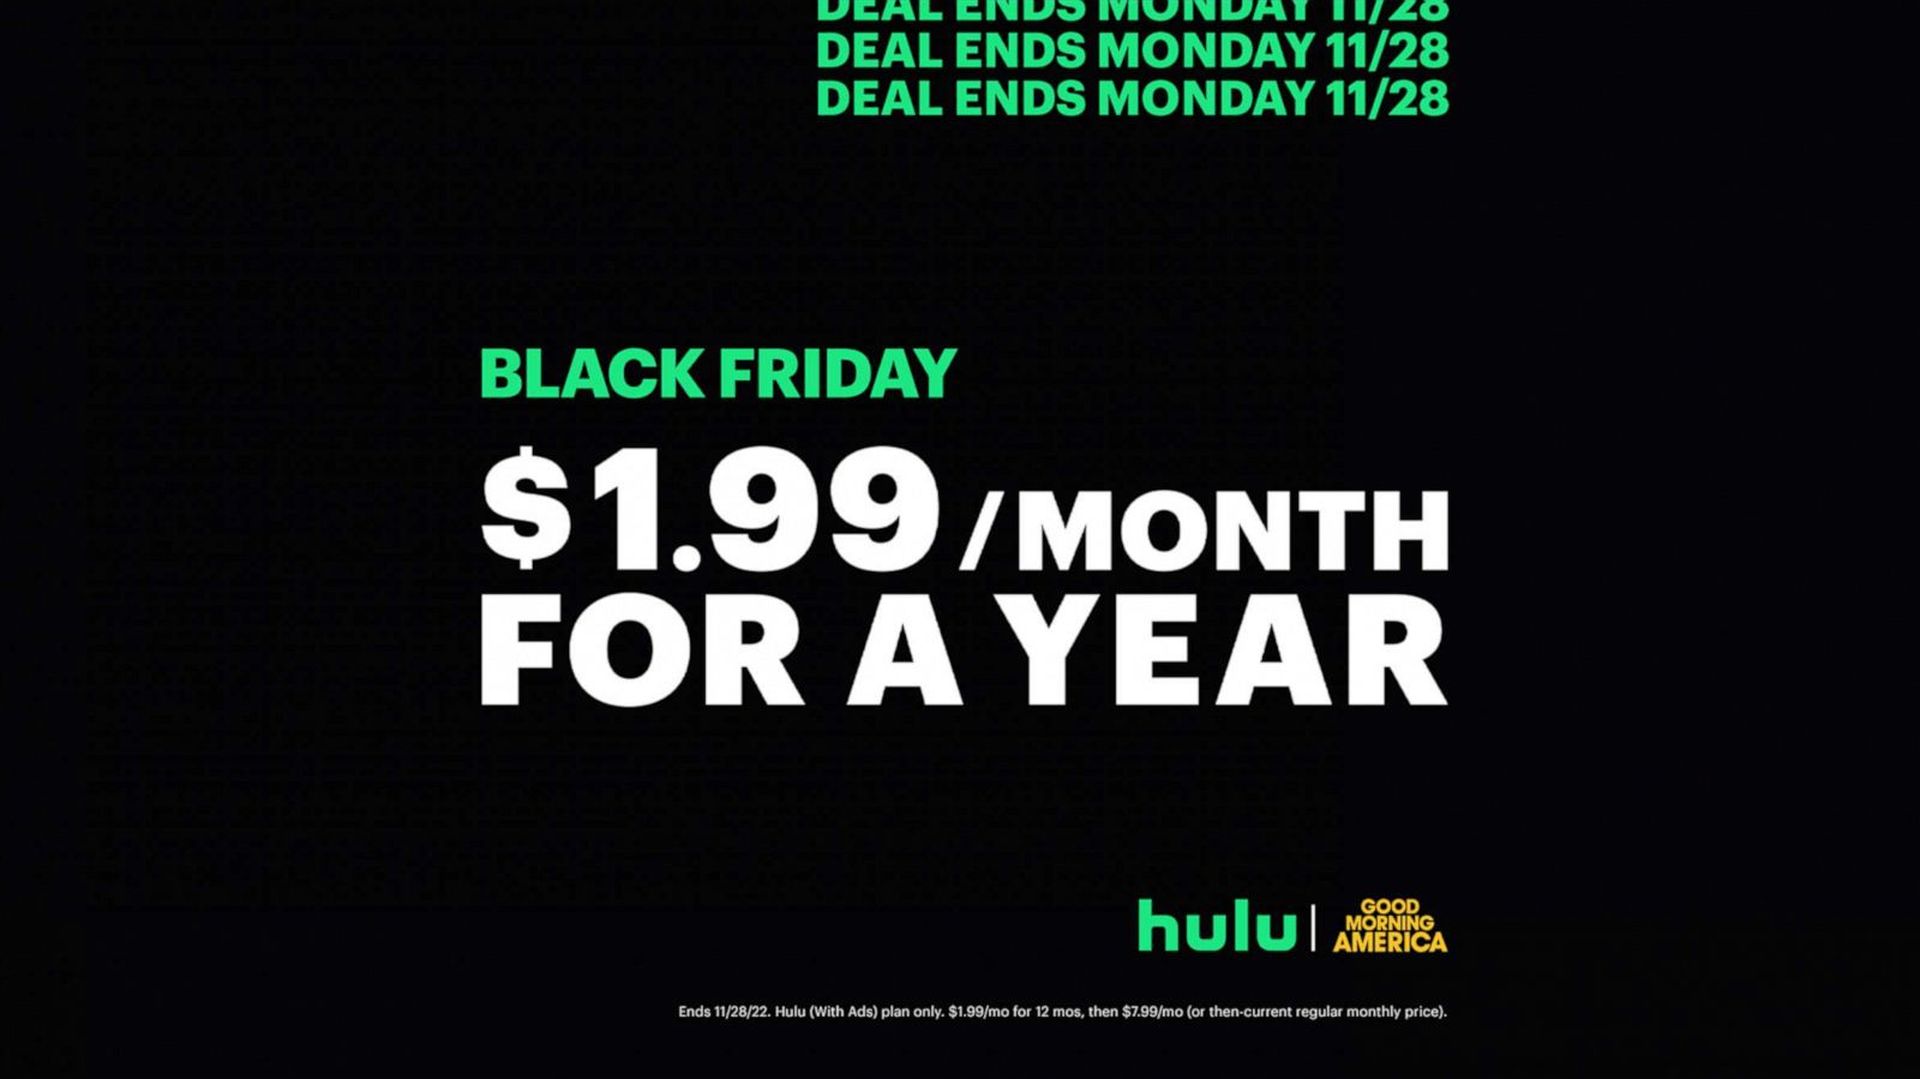 Oferta de viernes negro de Hulu